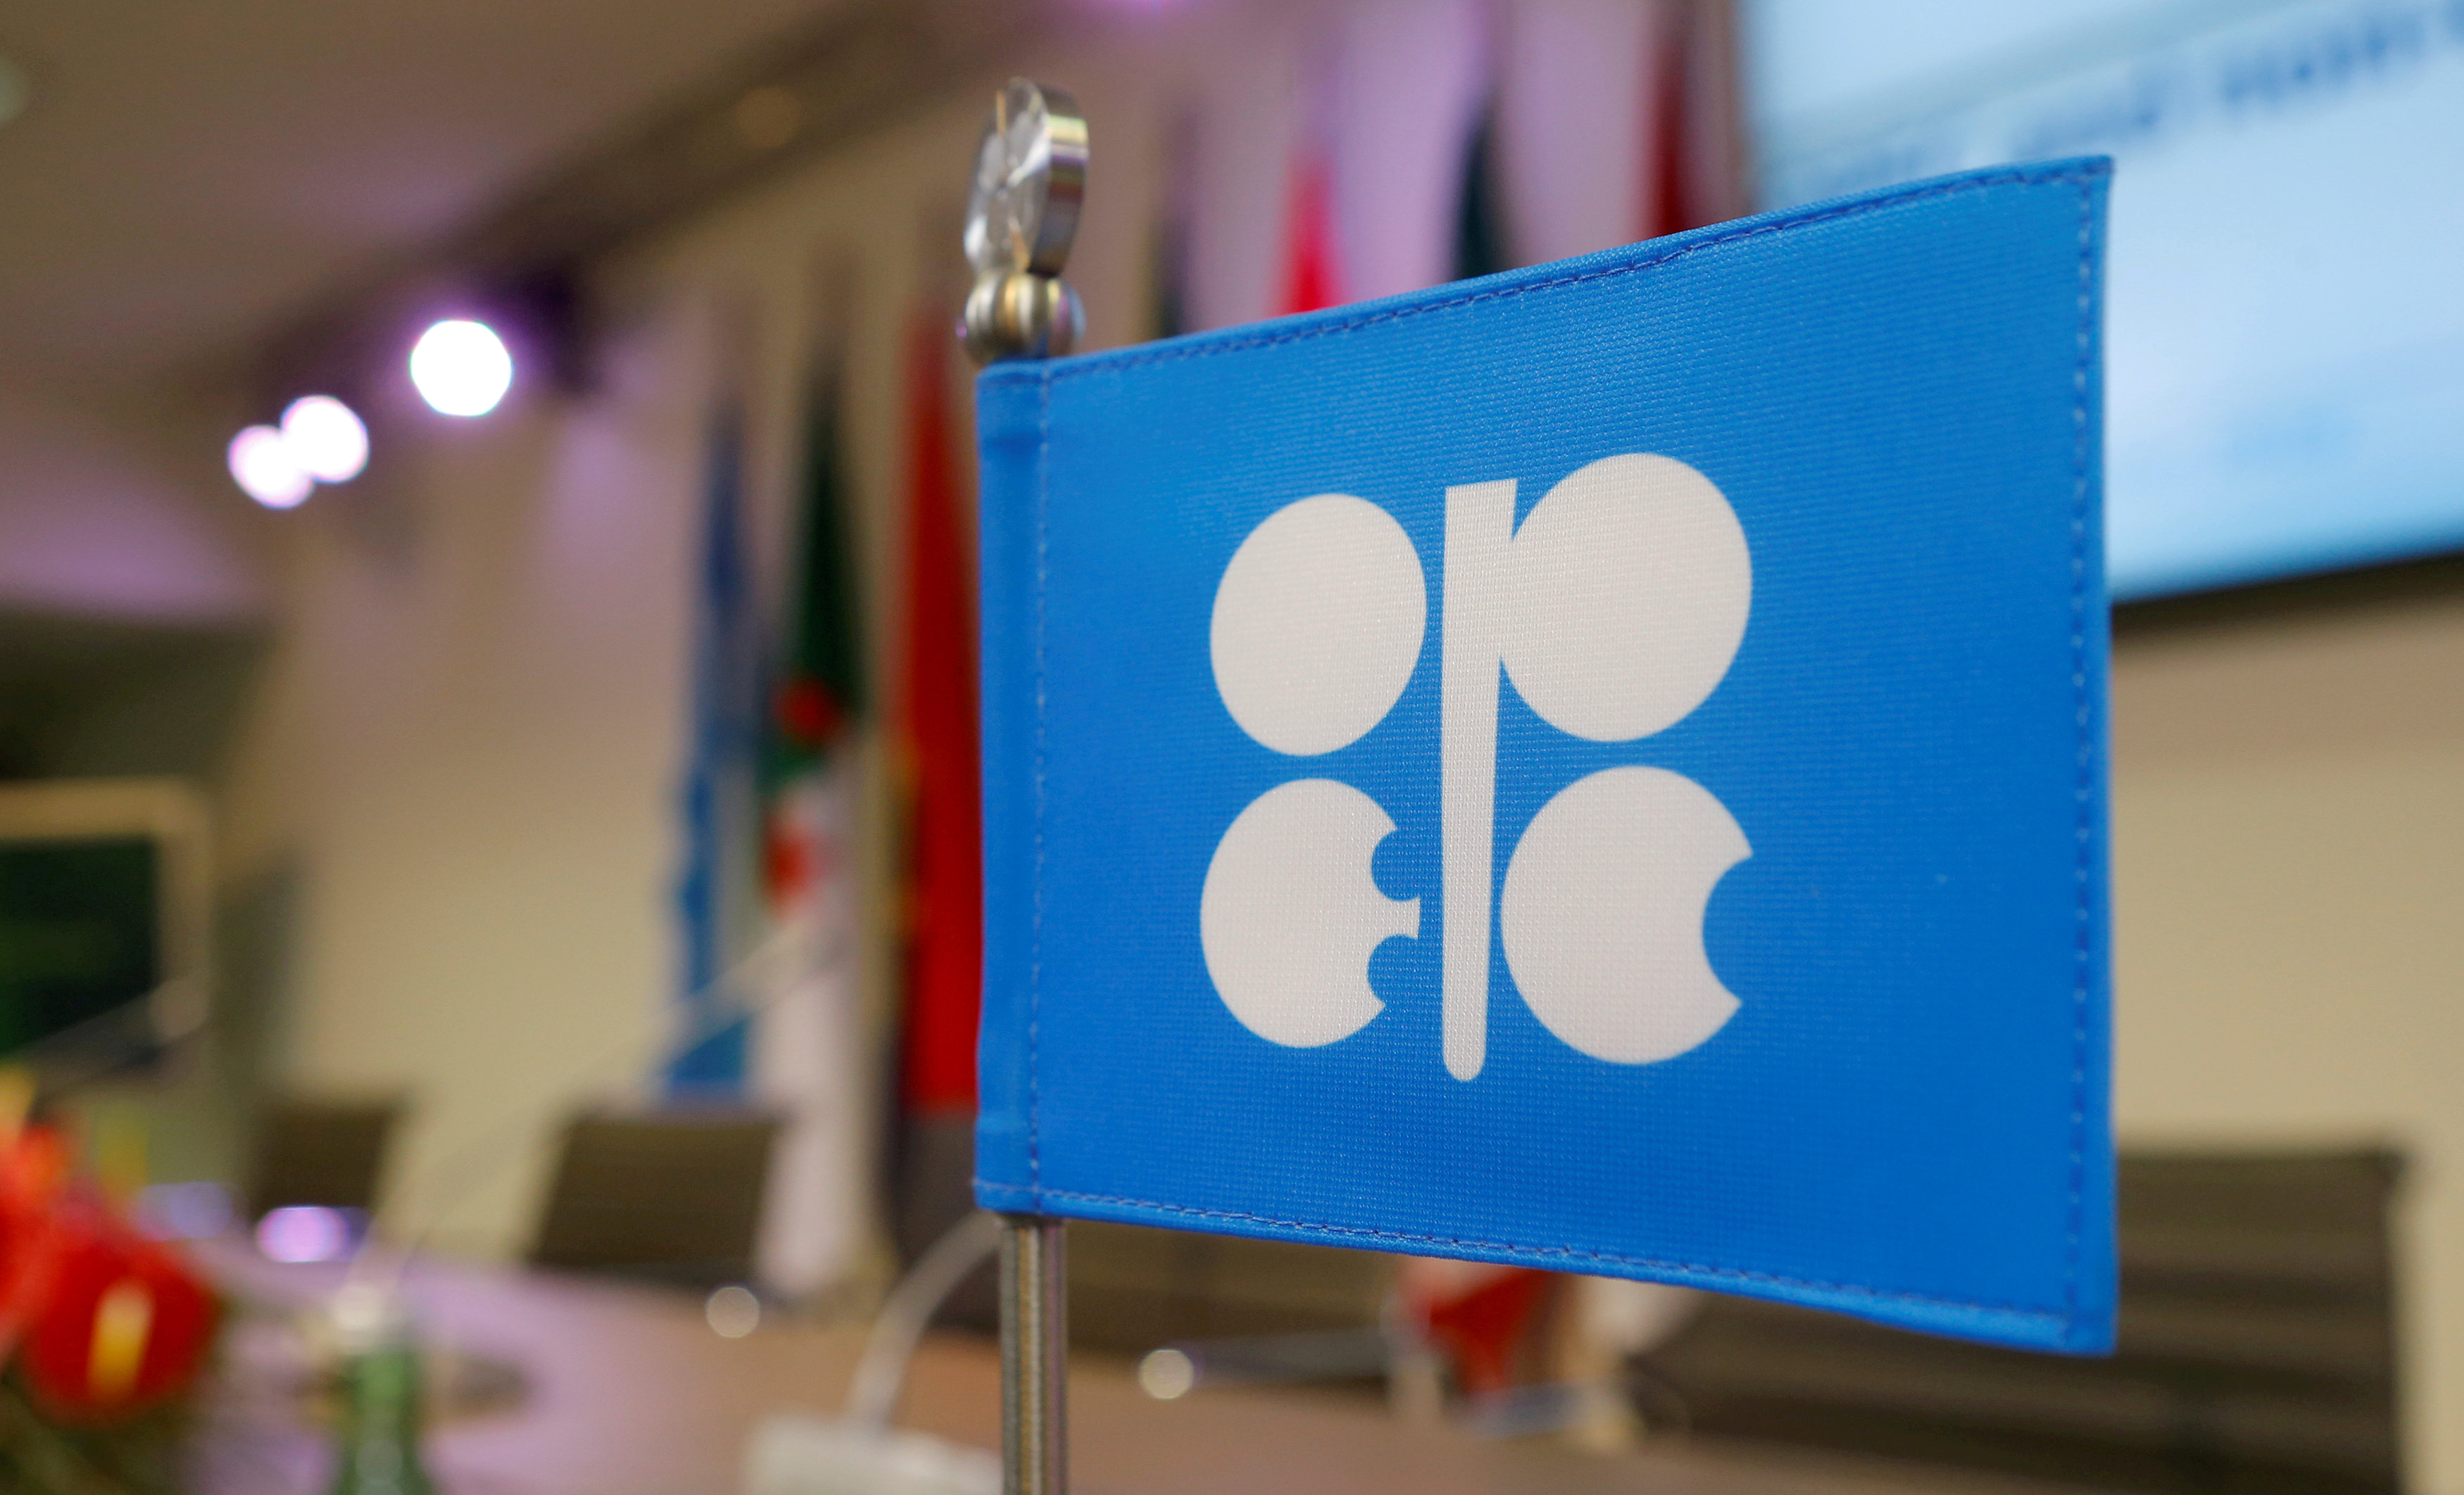 En diciembre de 2016, la OPEP acordó recortar la producción en un total de 1,8 millones de barriles al día (bpd) en el primer trimestre de 2017.